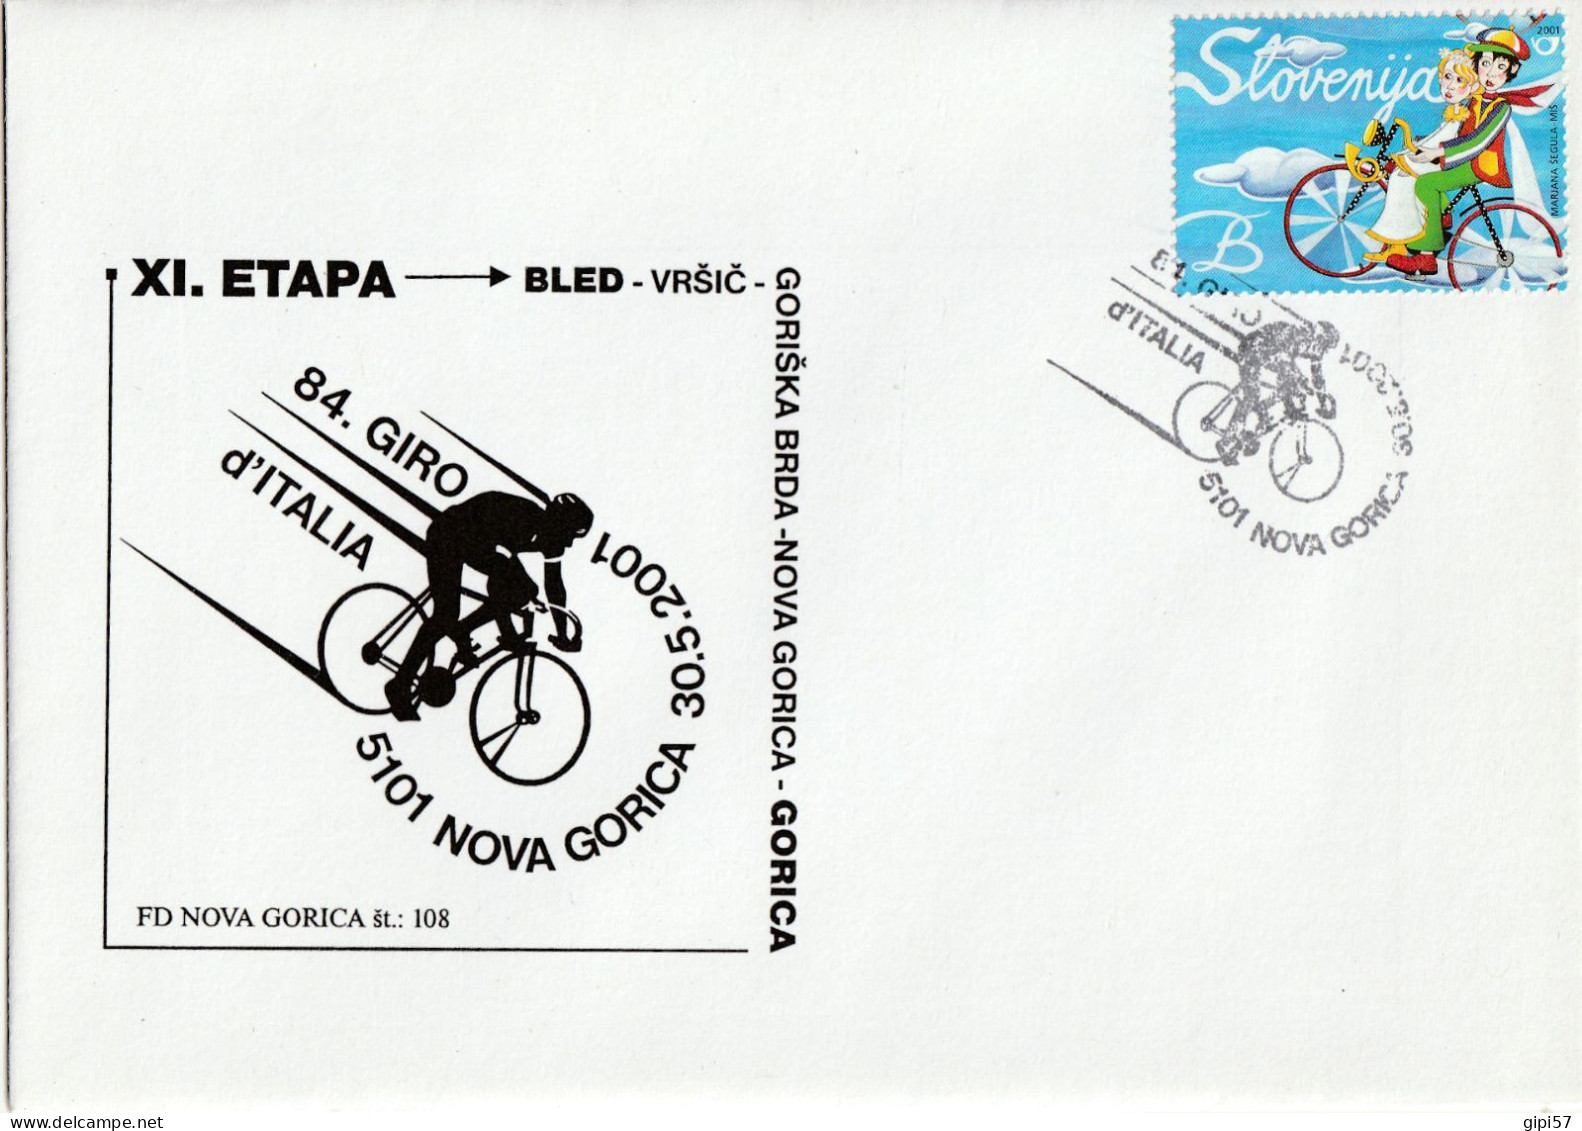 CICLISMO 84. GIRO D'ITALIA 2001 - TAPPA BLED GORIZIA. SLOVENIA. ANNULLO SPECIALE NOVA GORICA SU BUSTA DEDICATA - Ciclismo